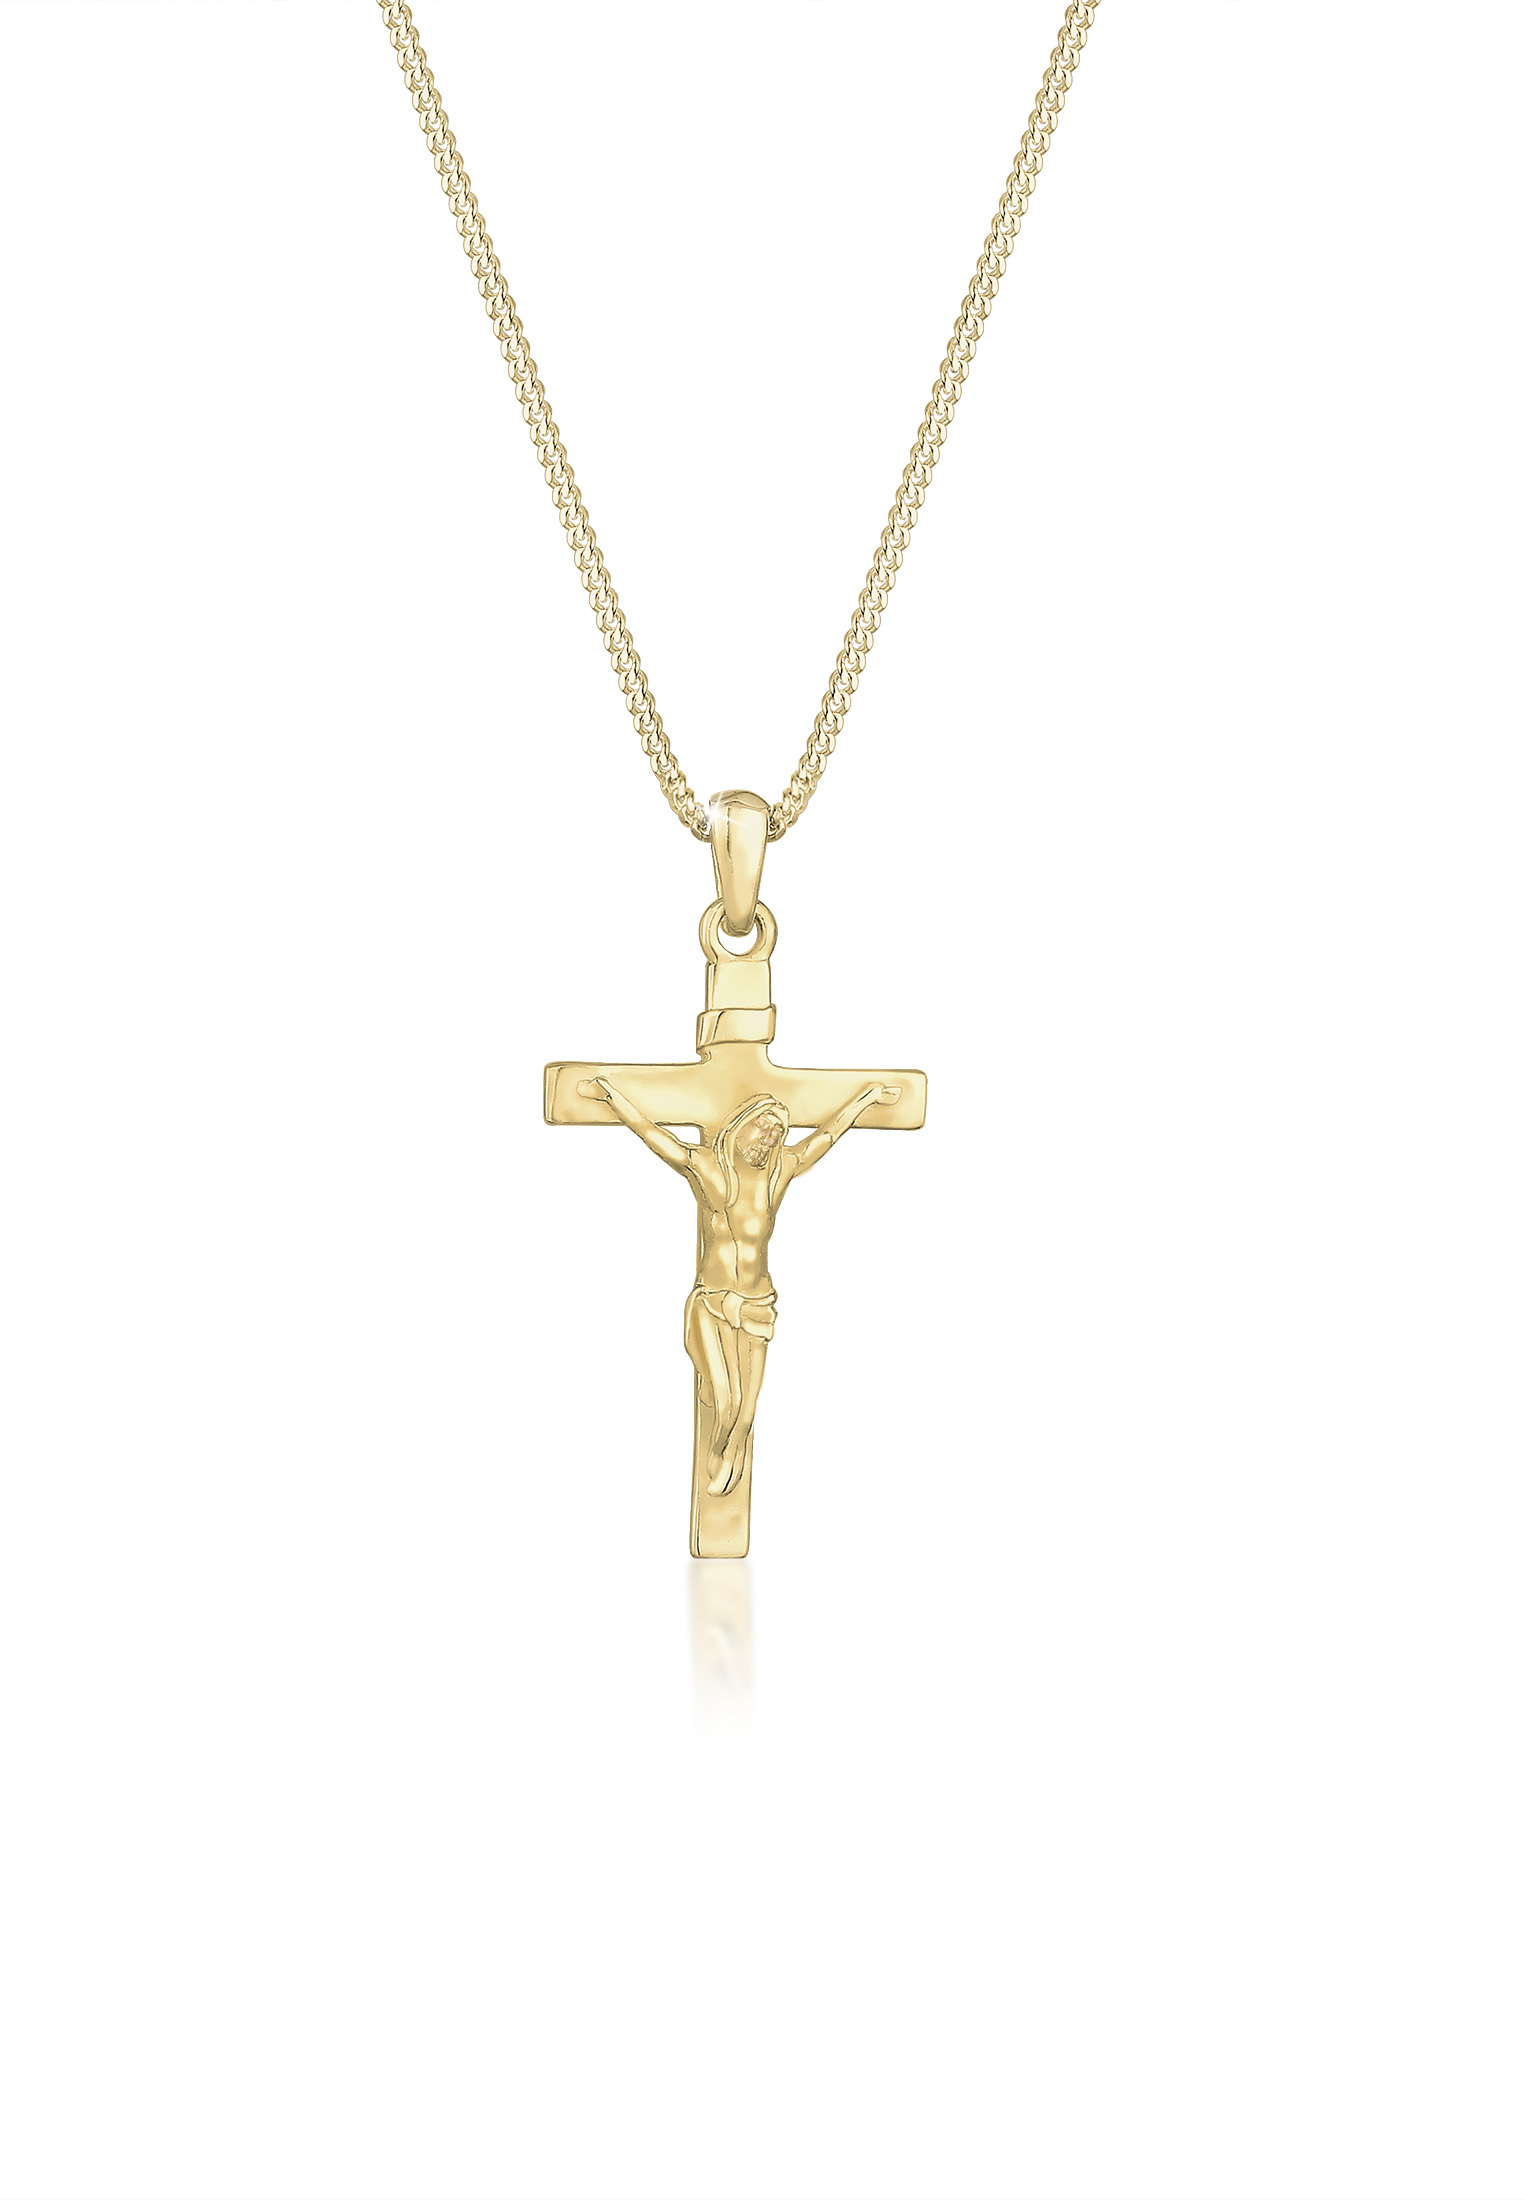 Halskette Kreuz | 375 Gelbgold